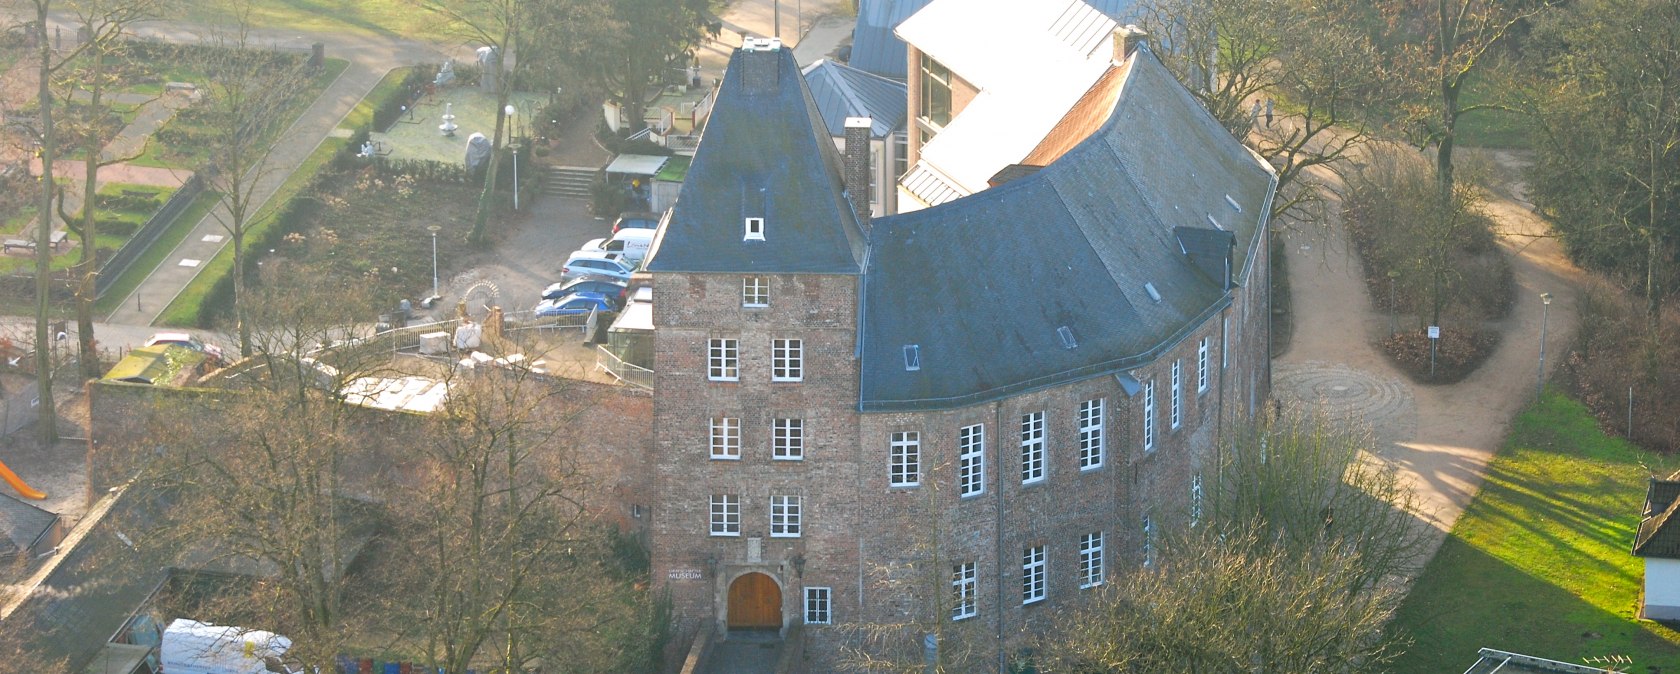 Moerser Schloss von oben, © Volker Kuinke / Stadt Moers